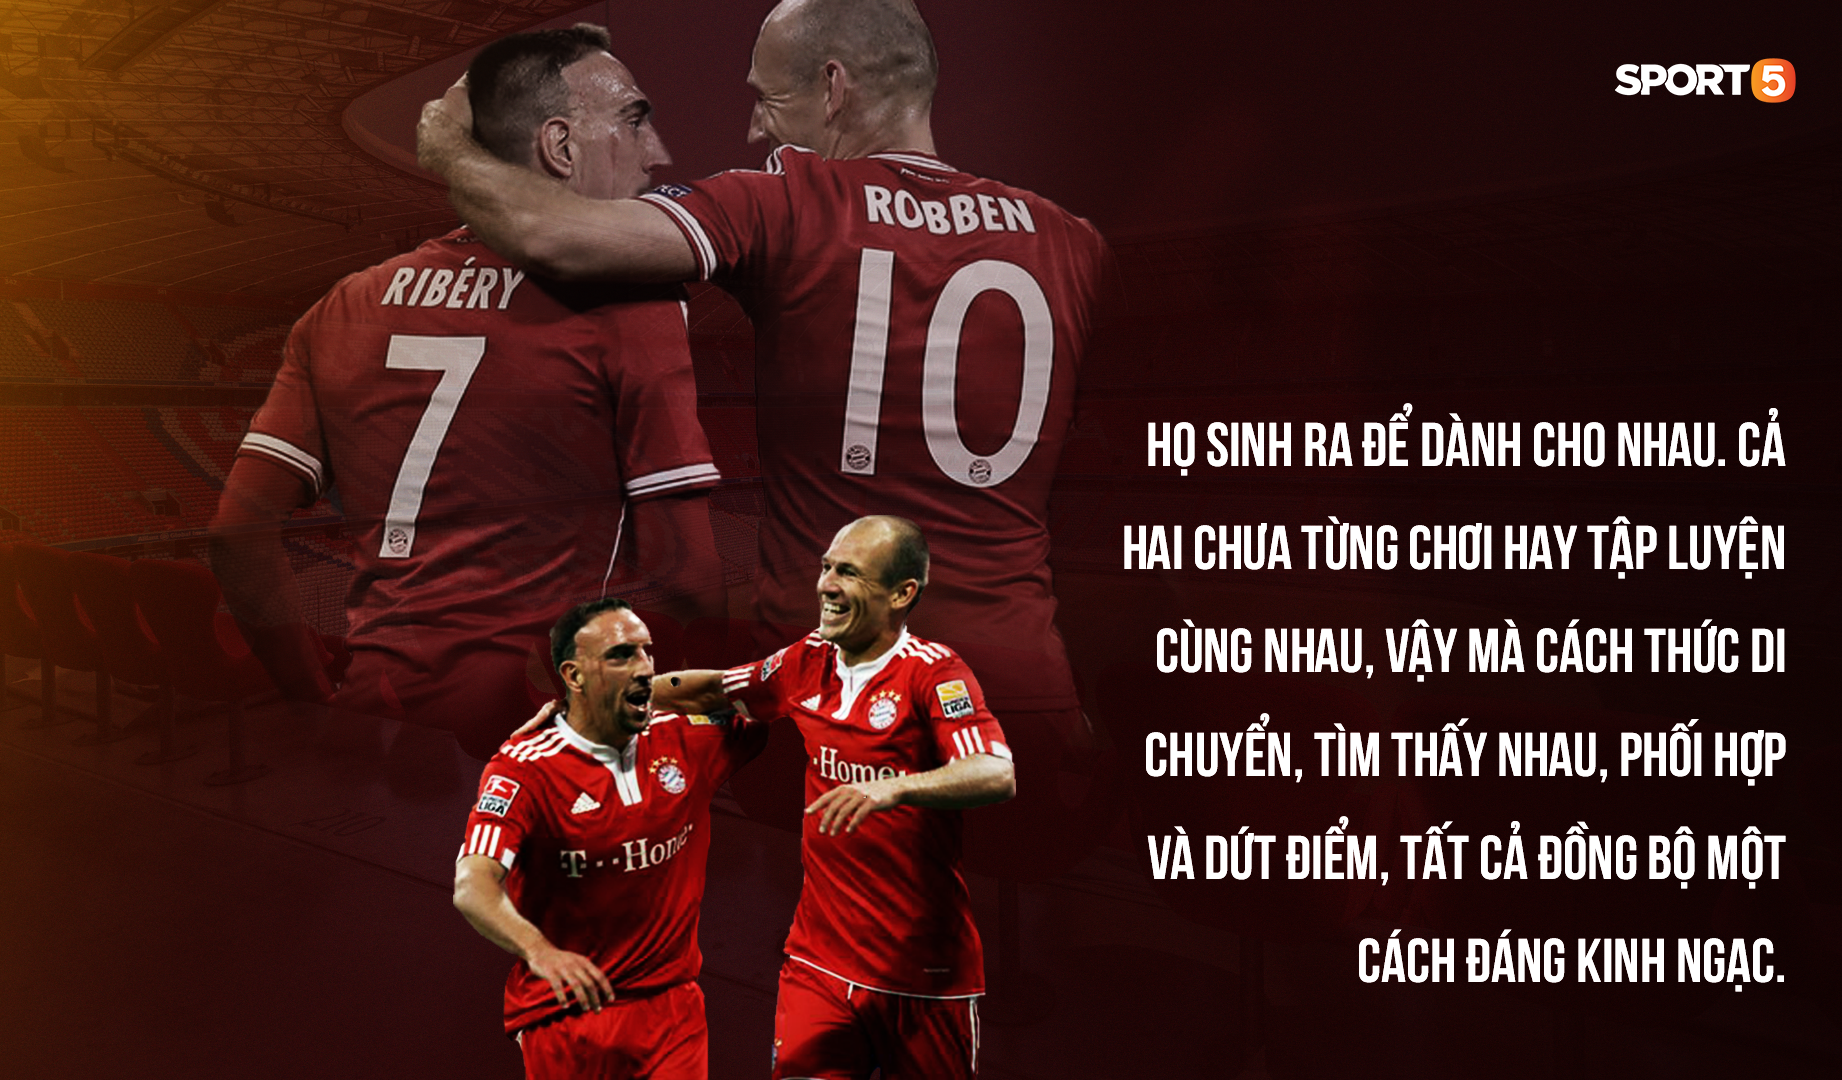 Robben - Ribery: Khi người ta sinh ra để dành cho nhau - Ảnh 1.